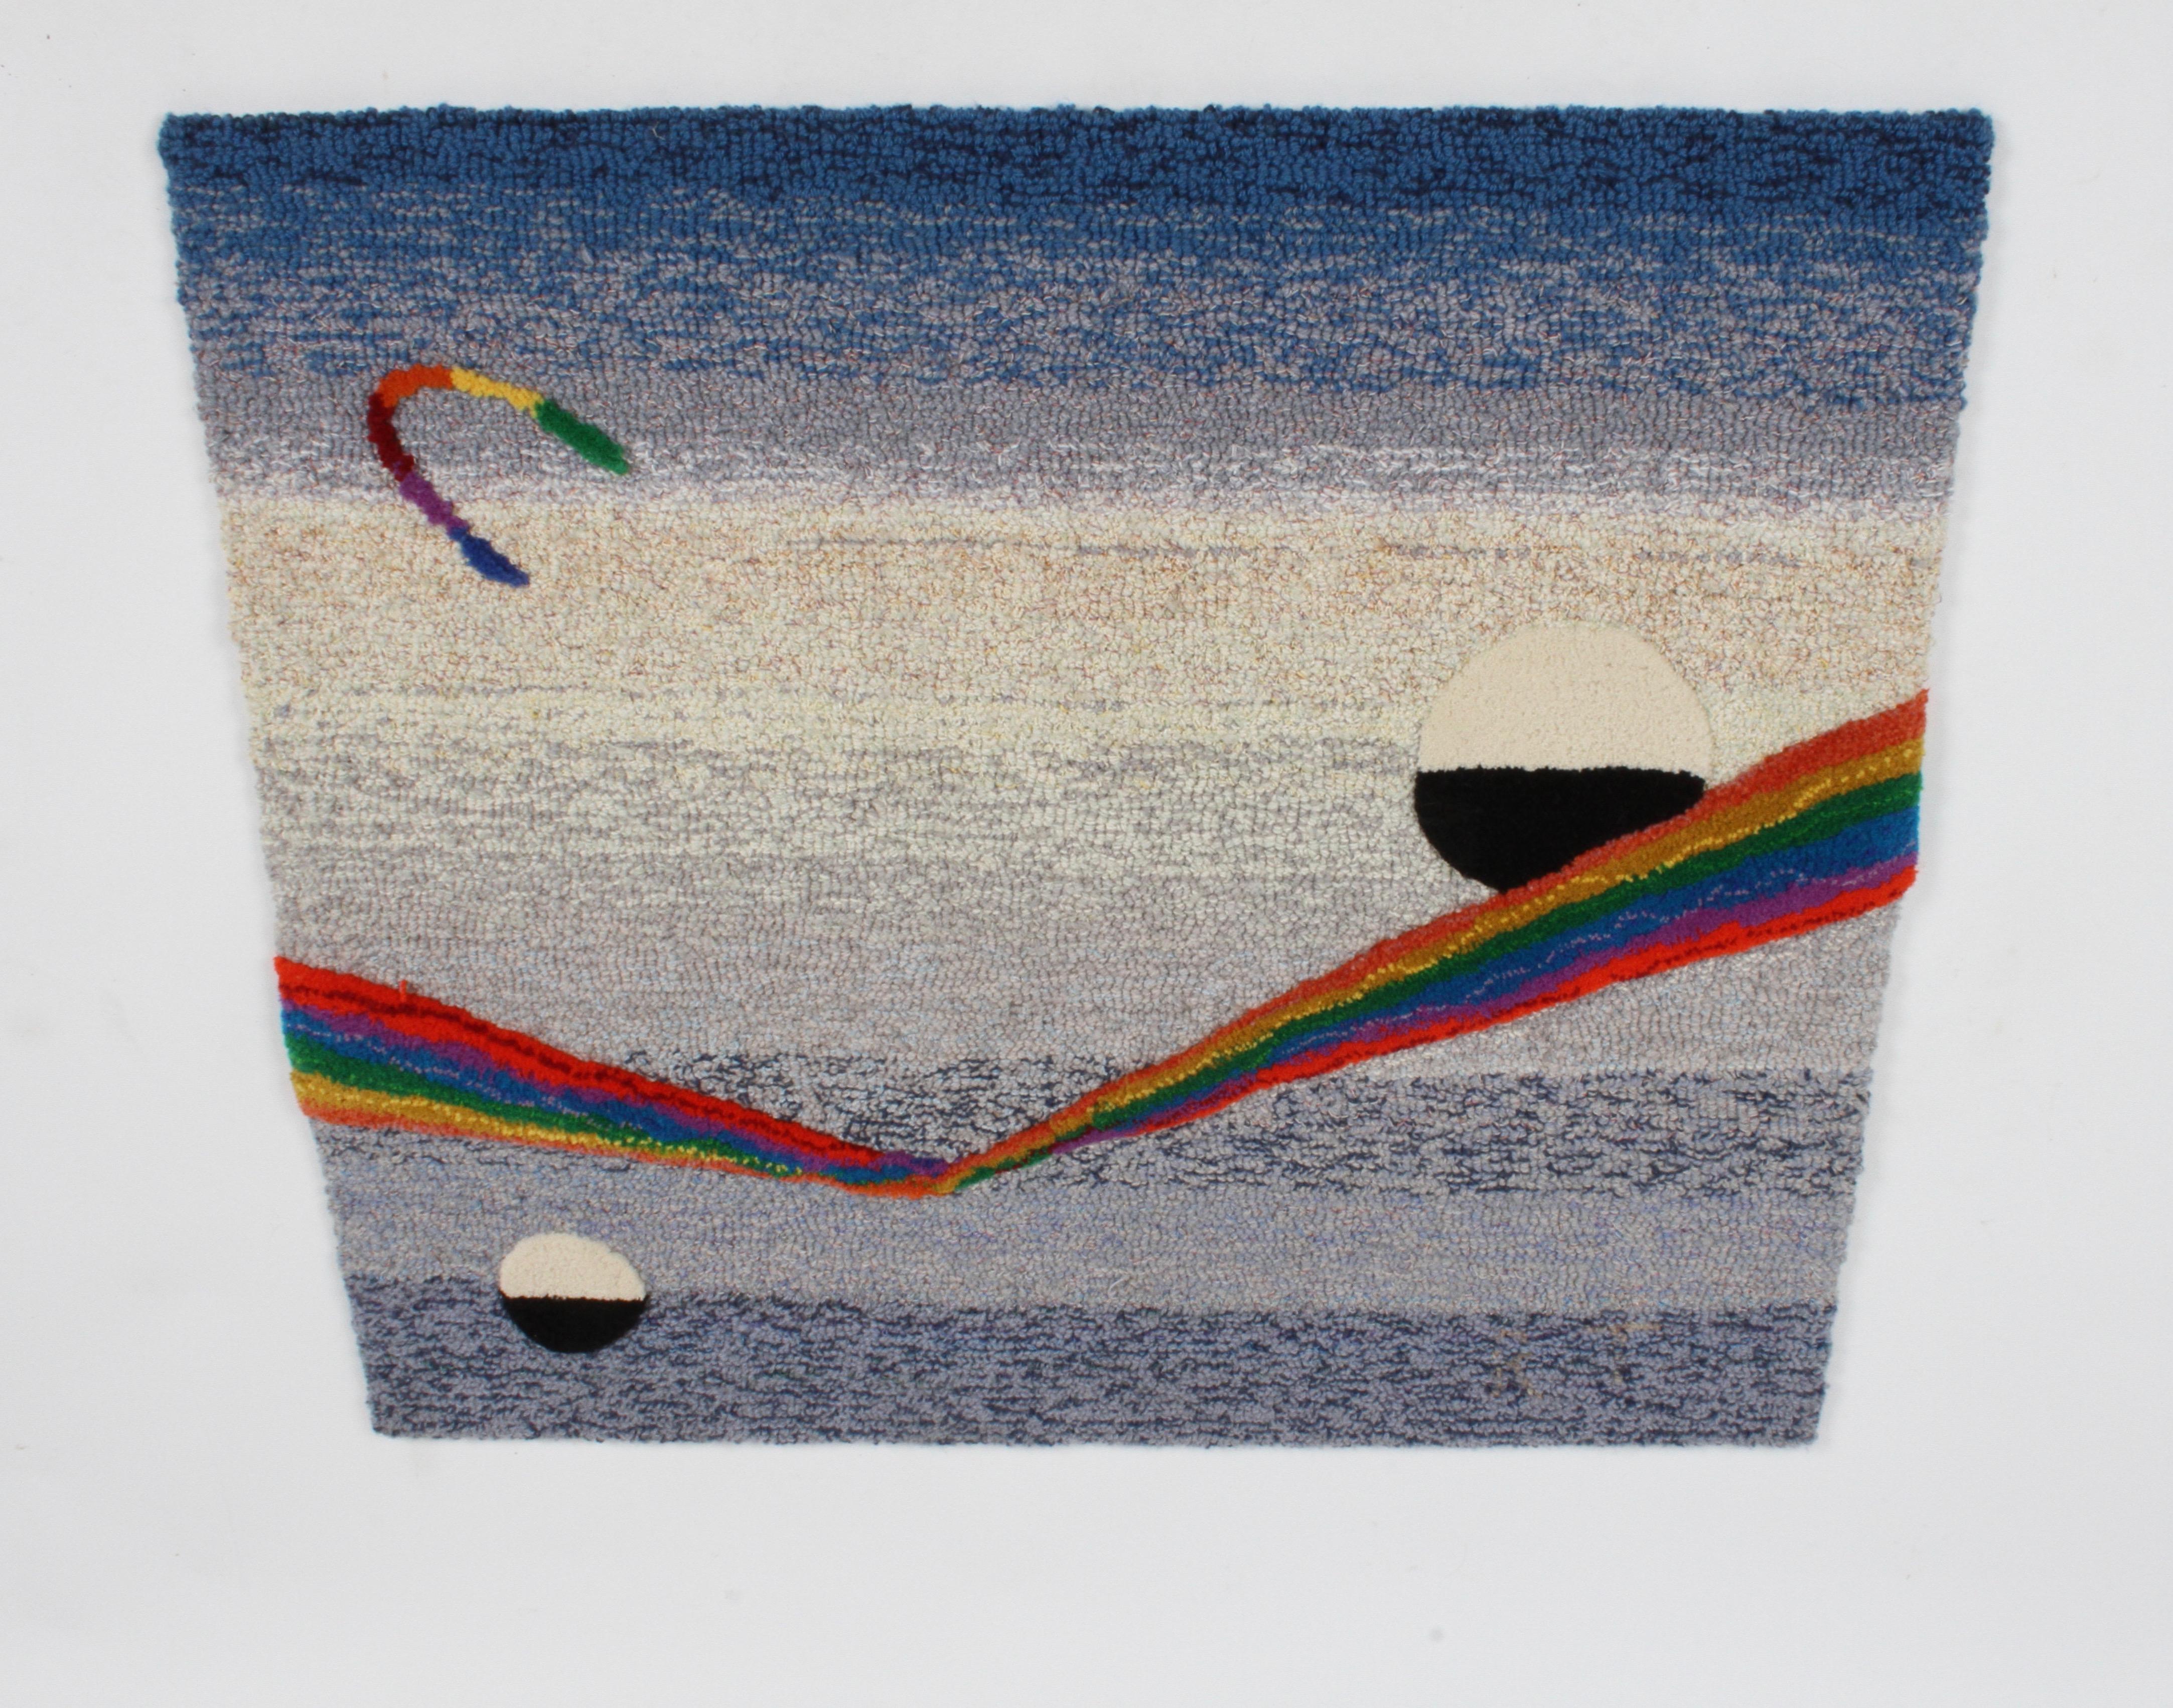 Designer Rugs of Australia, Wandteppich aus Wolle aus den 1980er Jahren, mit dem Titel Space Fantasy und der Signatur R.T auf der Vorderseite. Erhöhtes Plüsch-Regenbogenspektrum und zwei schwarz-weiße Planeten auf blauem und cremefarbenem